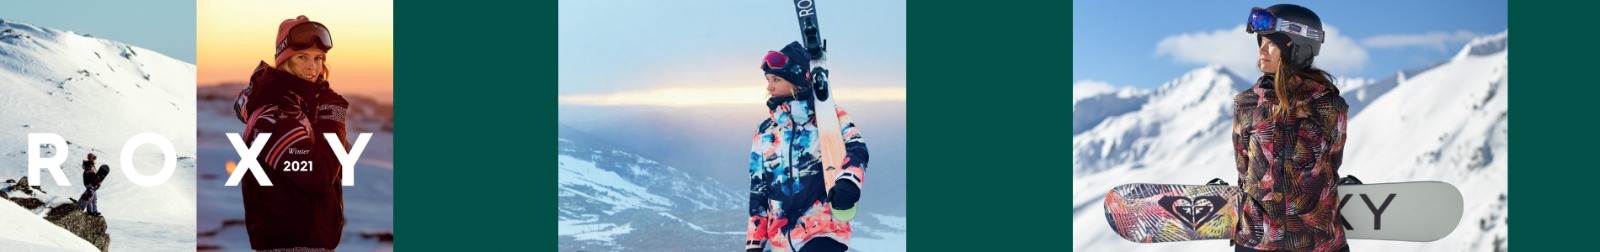 Roxy Kayak Snowboard Lifestyle Giyim, Çanta ve Ekipmanları